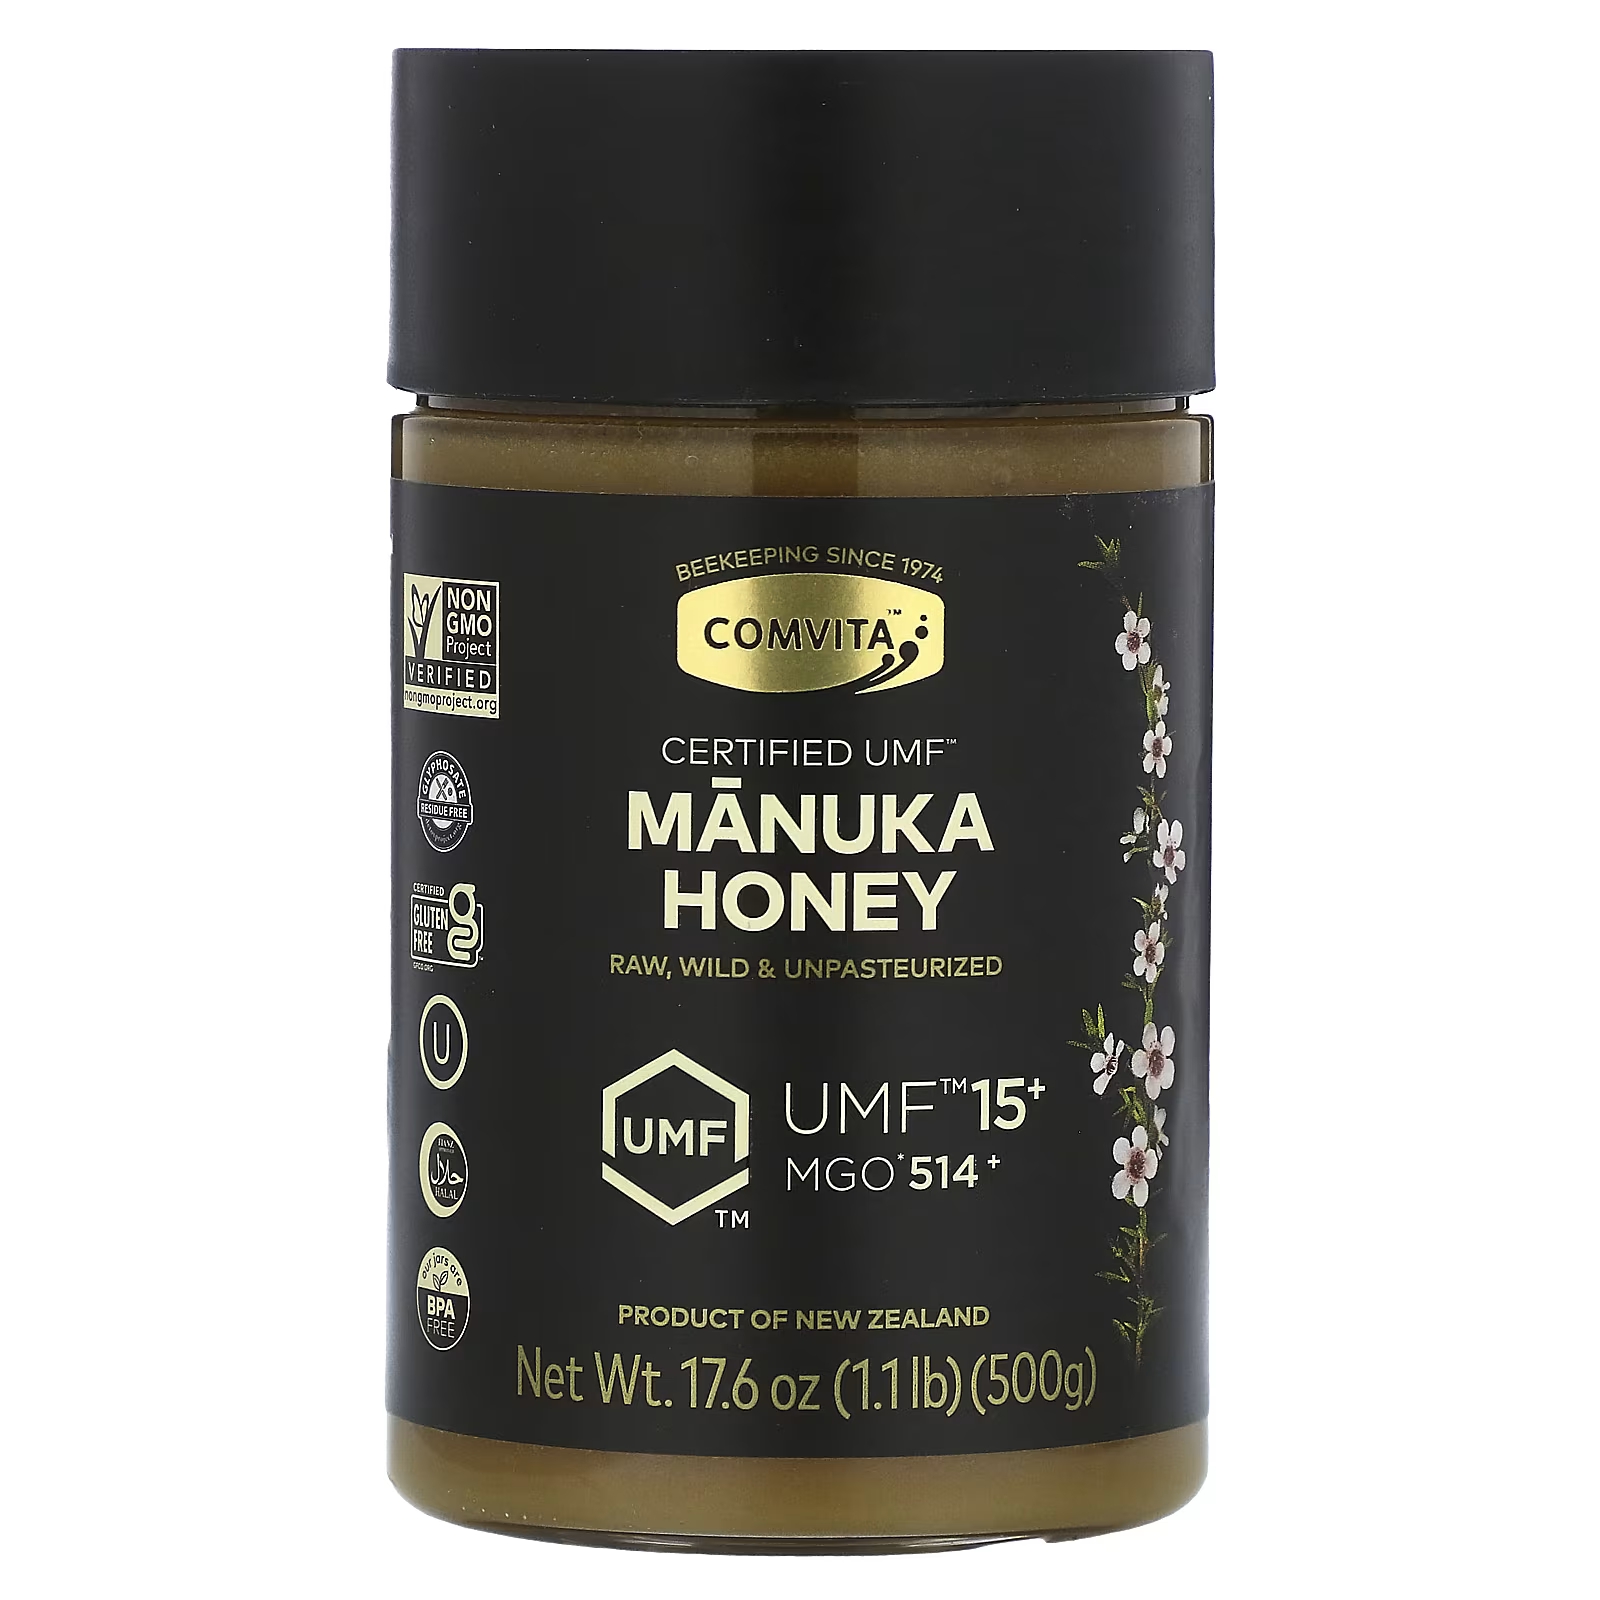 Comvita Raw Manuka Honey, сертифицированный UMF 15+ (MGO 514+), 17,6 унций (500 г)